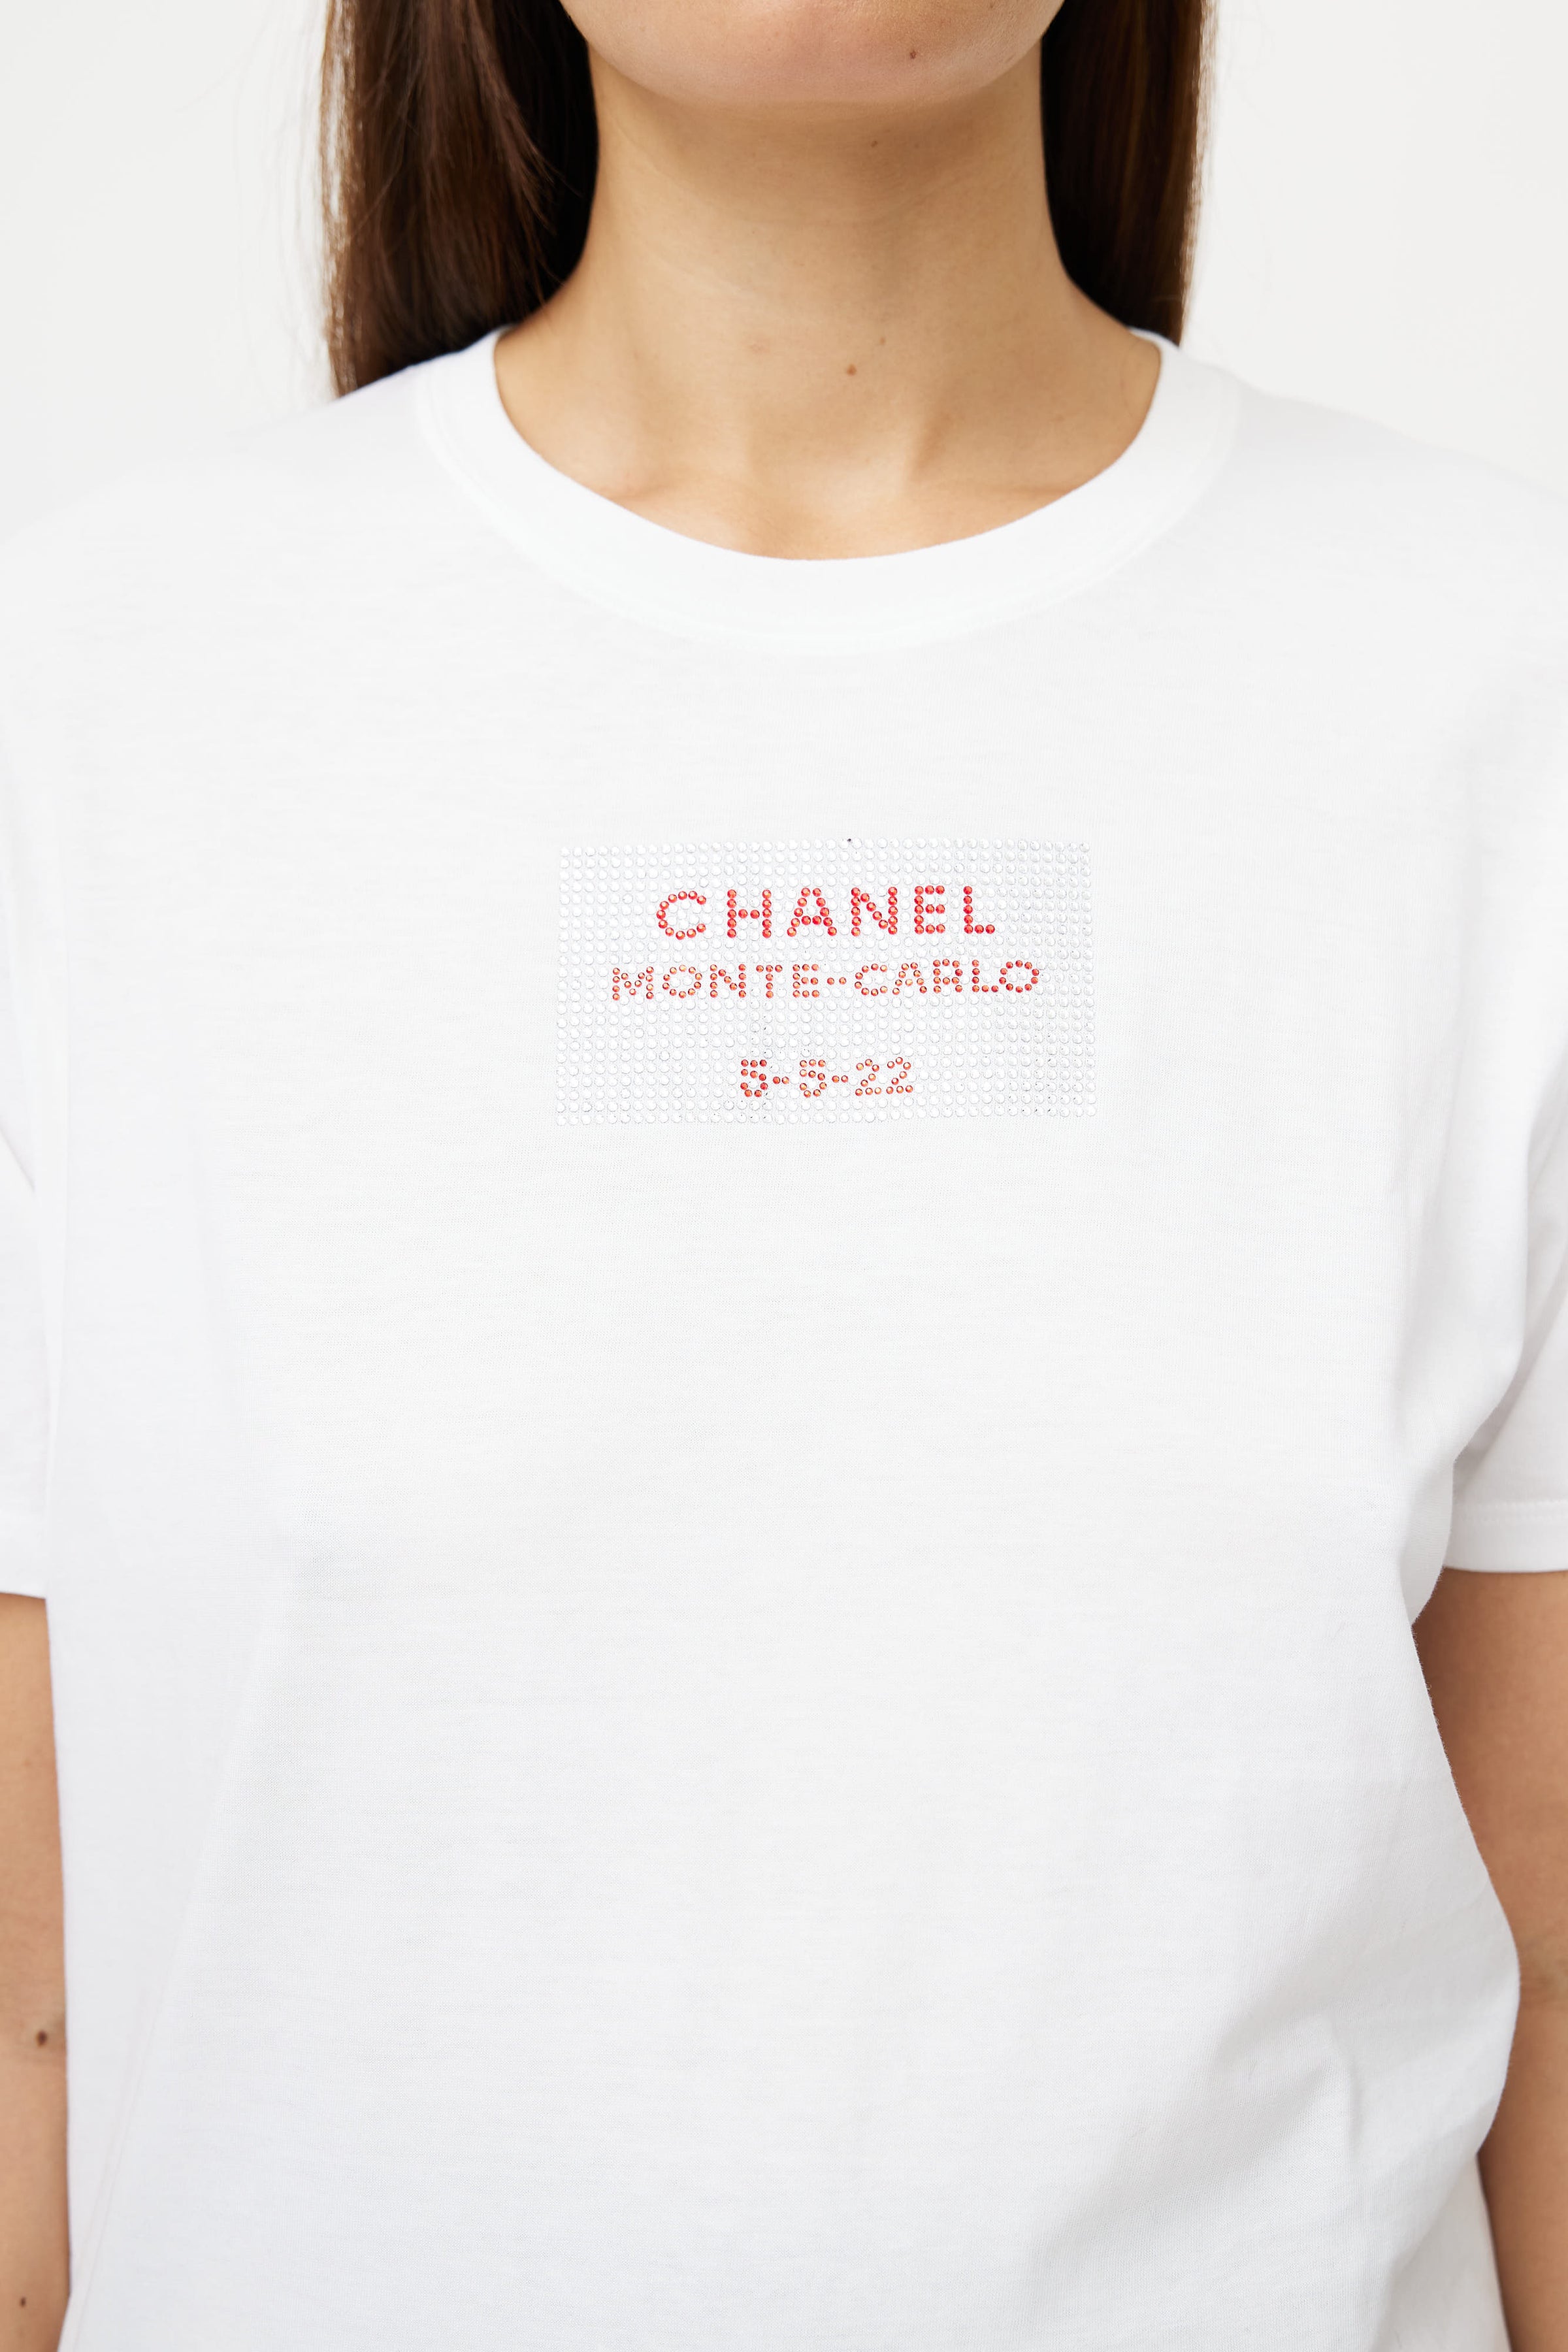 Chanel Logo Tshirts for Women  Mercari